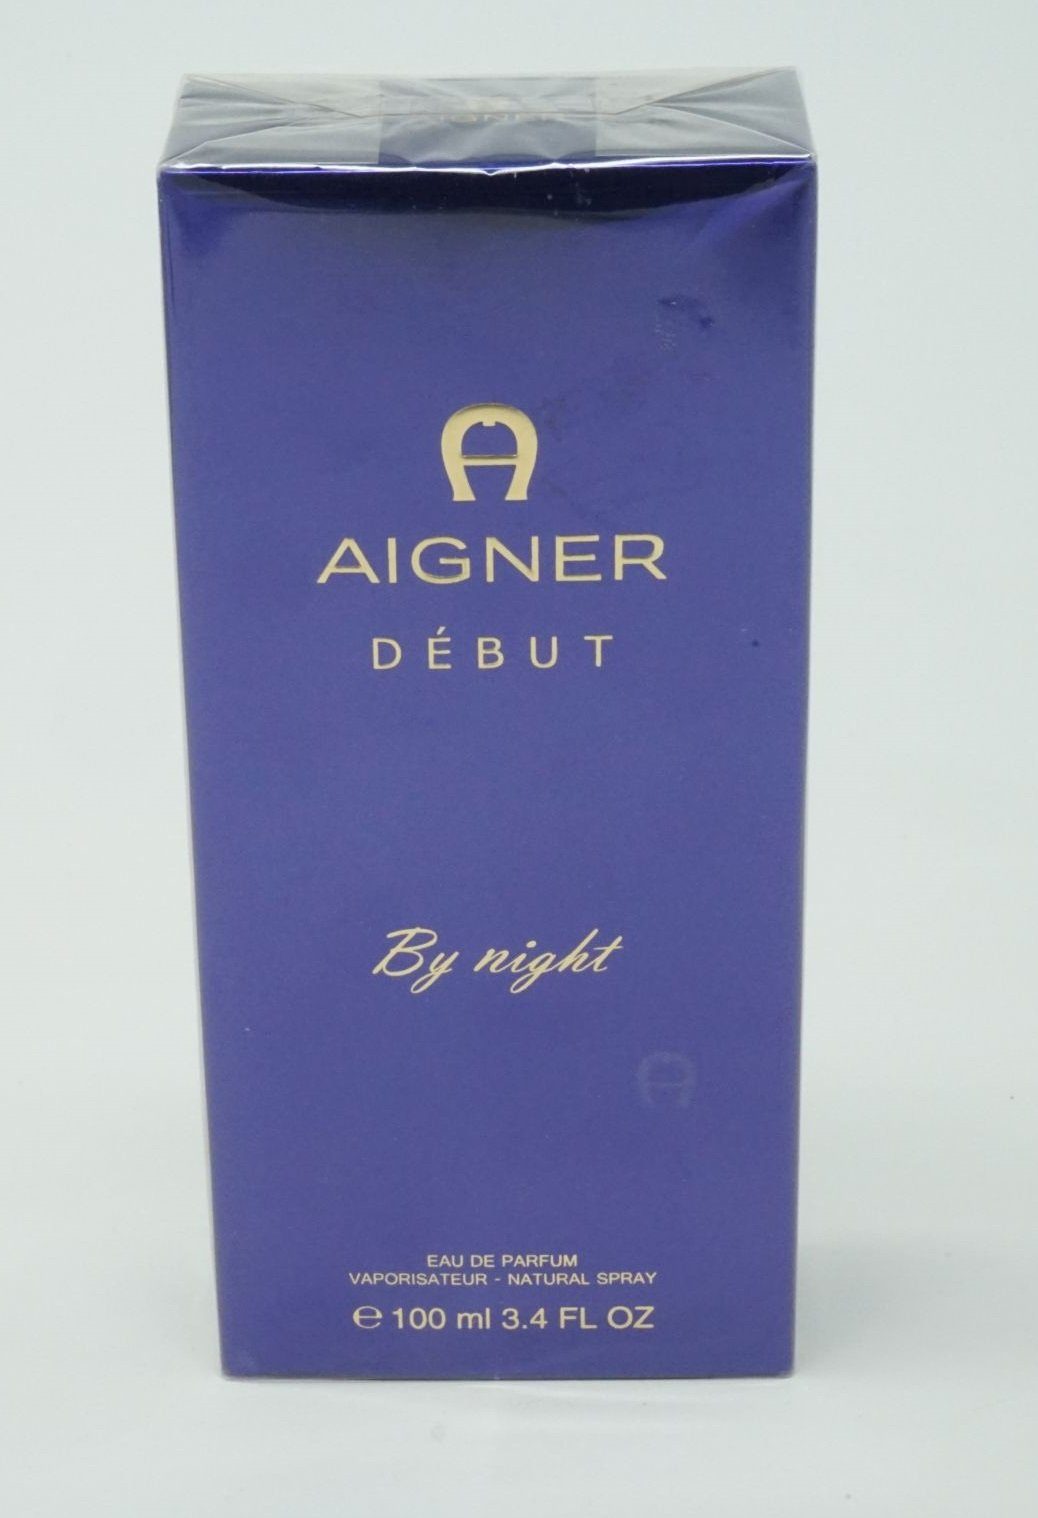 AIGNER Eau de Parfum Aigner Début By Night Eau de Parfum Spray 100ml